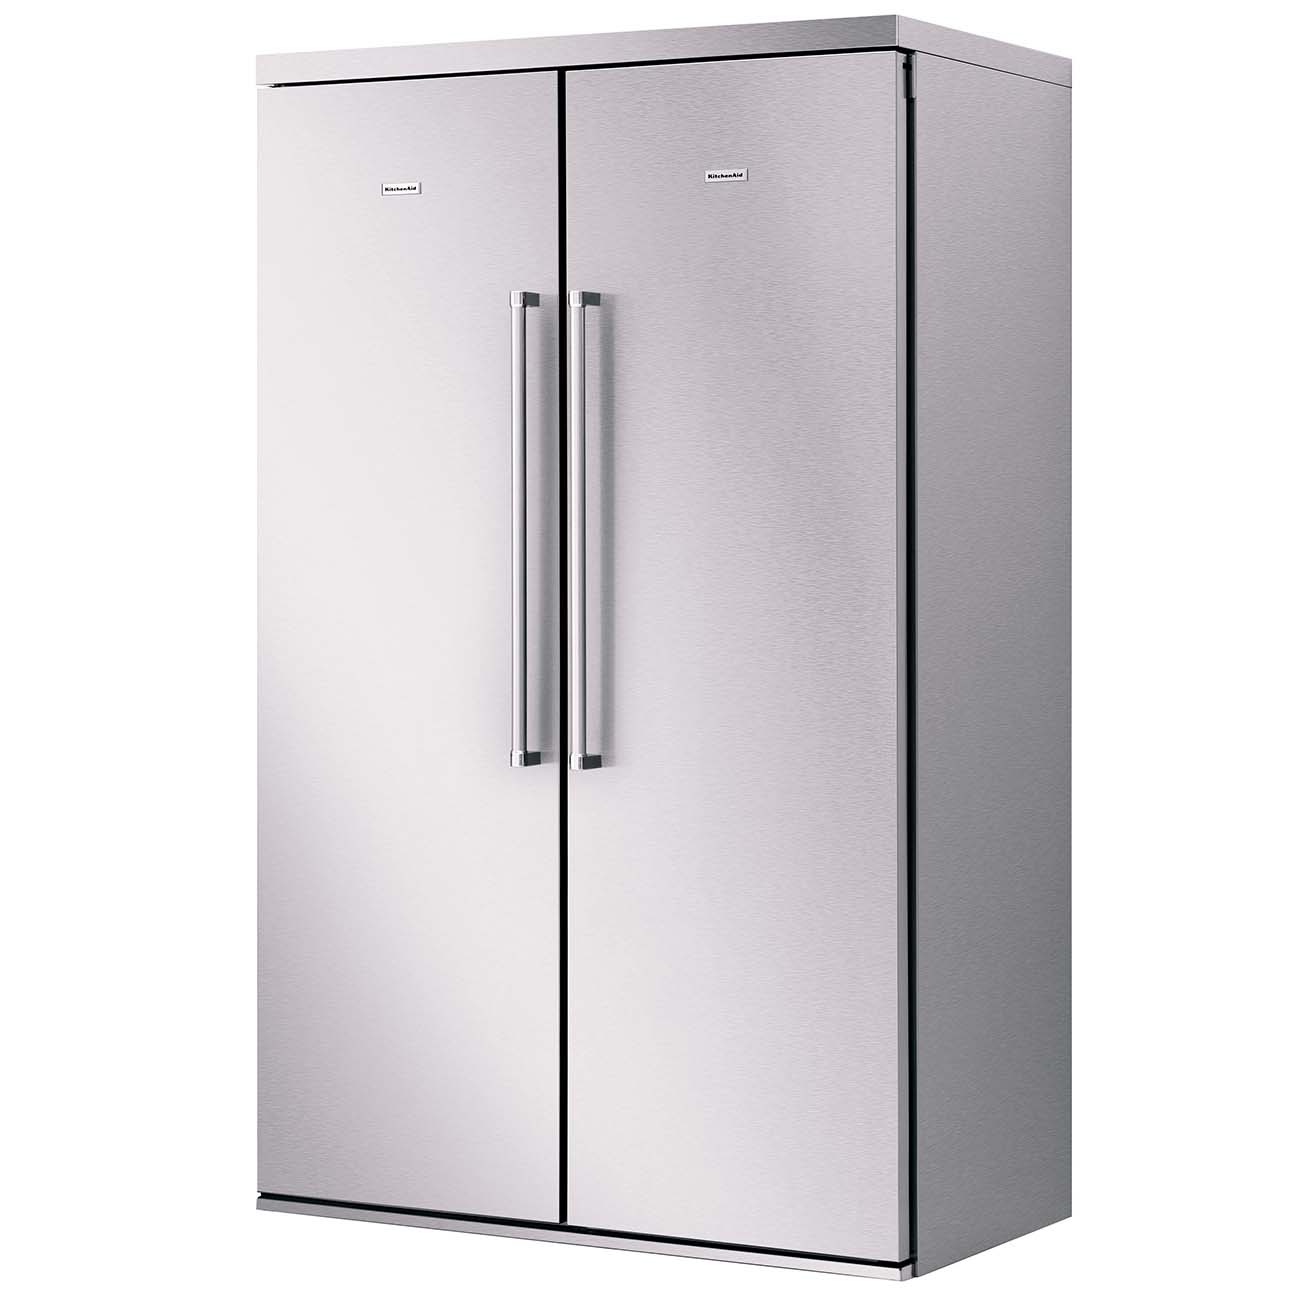 Холодильники аска. Kitchenaid KCFPX 18120. Холодильник kitchenaid KCBPX 18120. Холодильник 2х дверный распашной Элджи. Встраиваемый холодильник Side by Side.